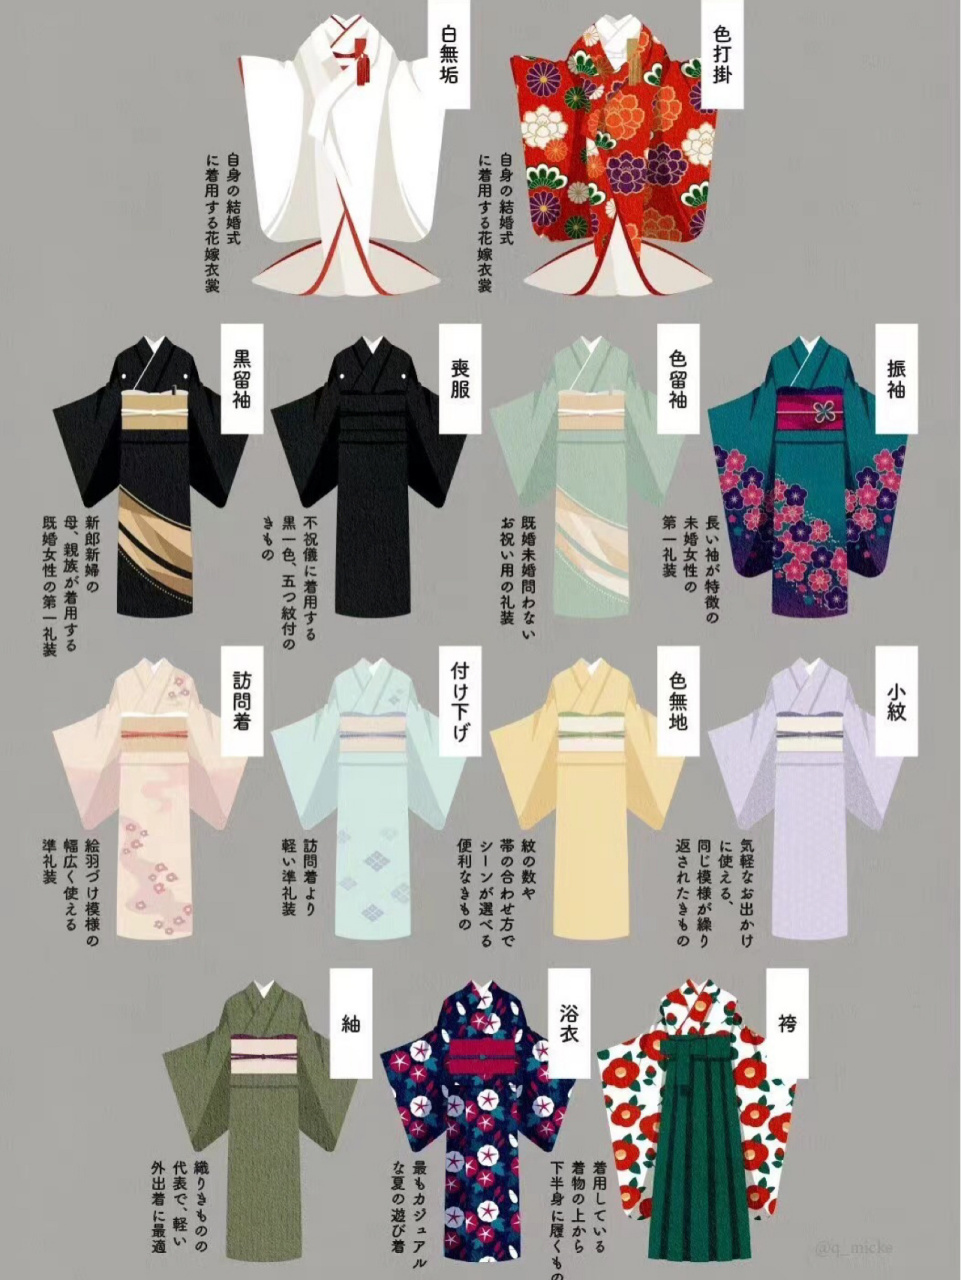 和服的分类 和服的分类,你喜欢的是哪一种